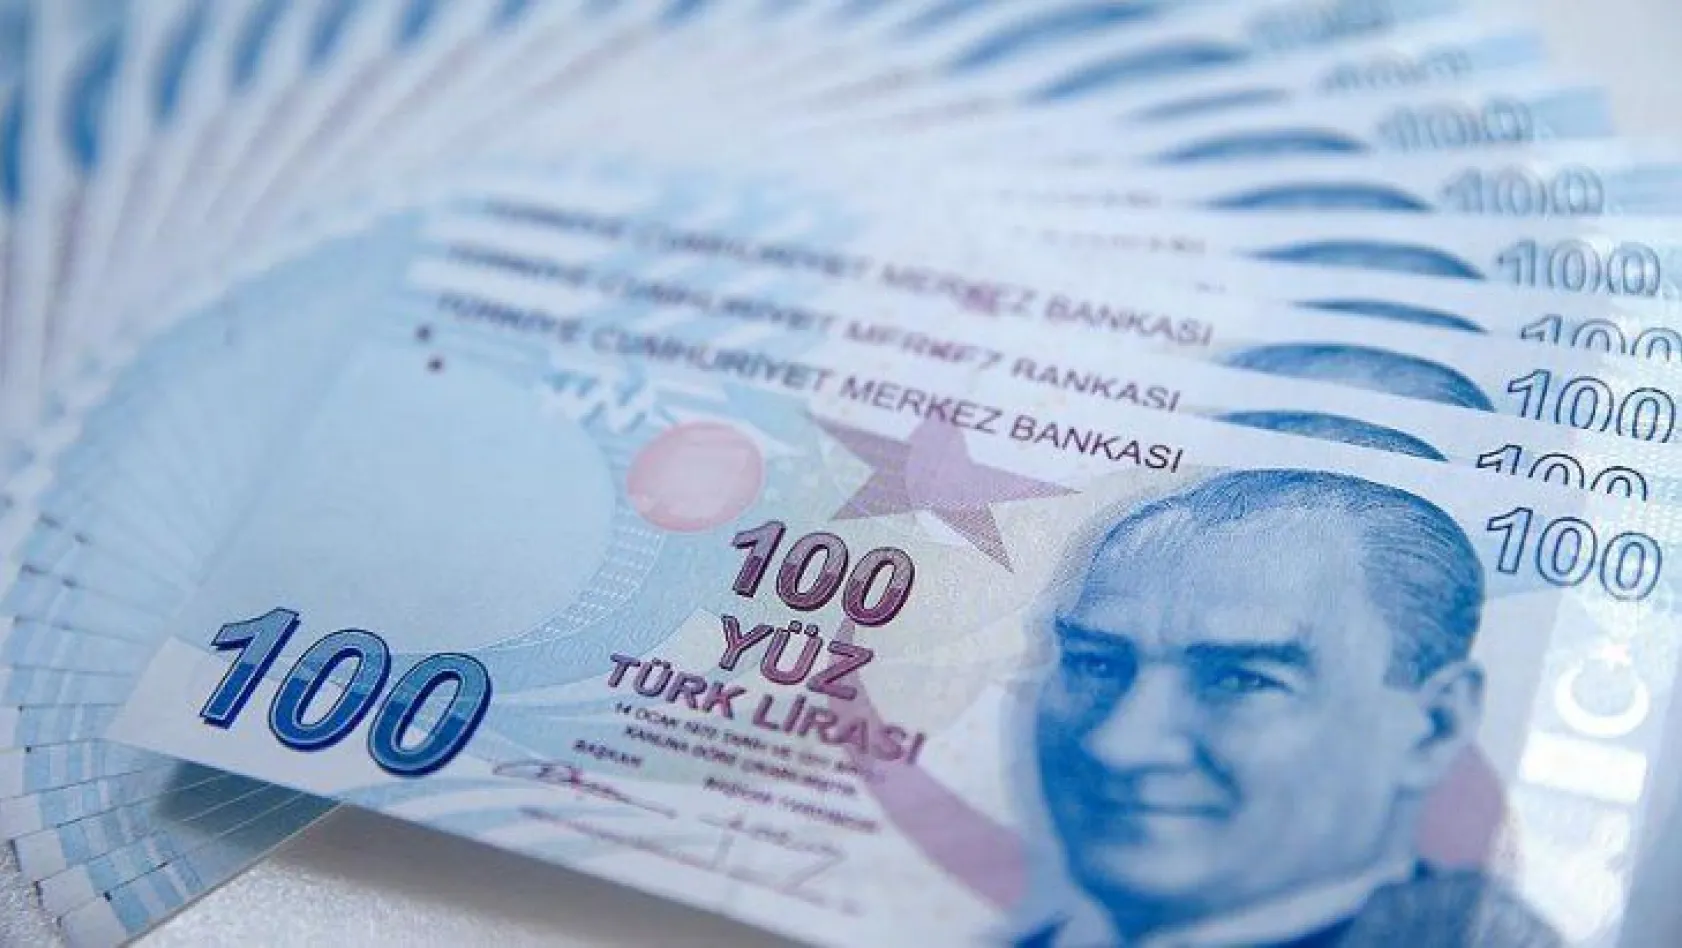 Türkiye'nin vergi rekortmenleri açıklandı